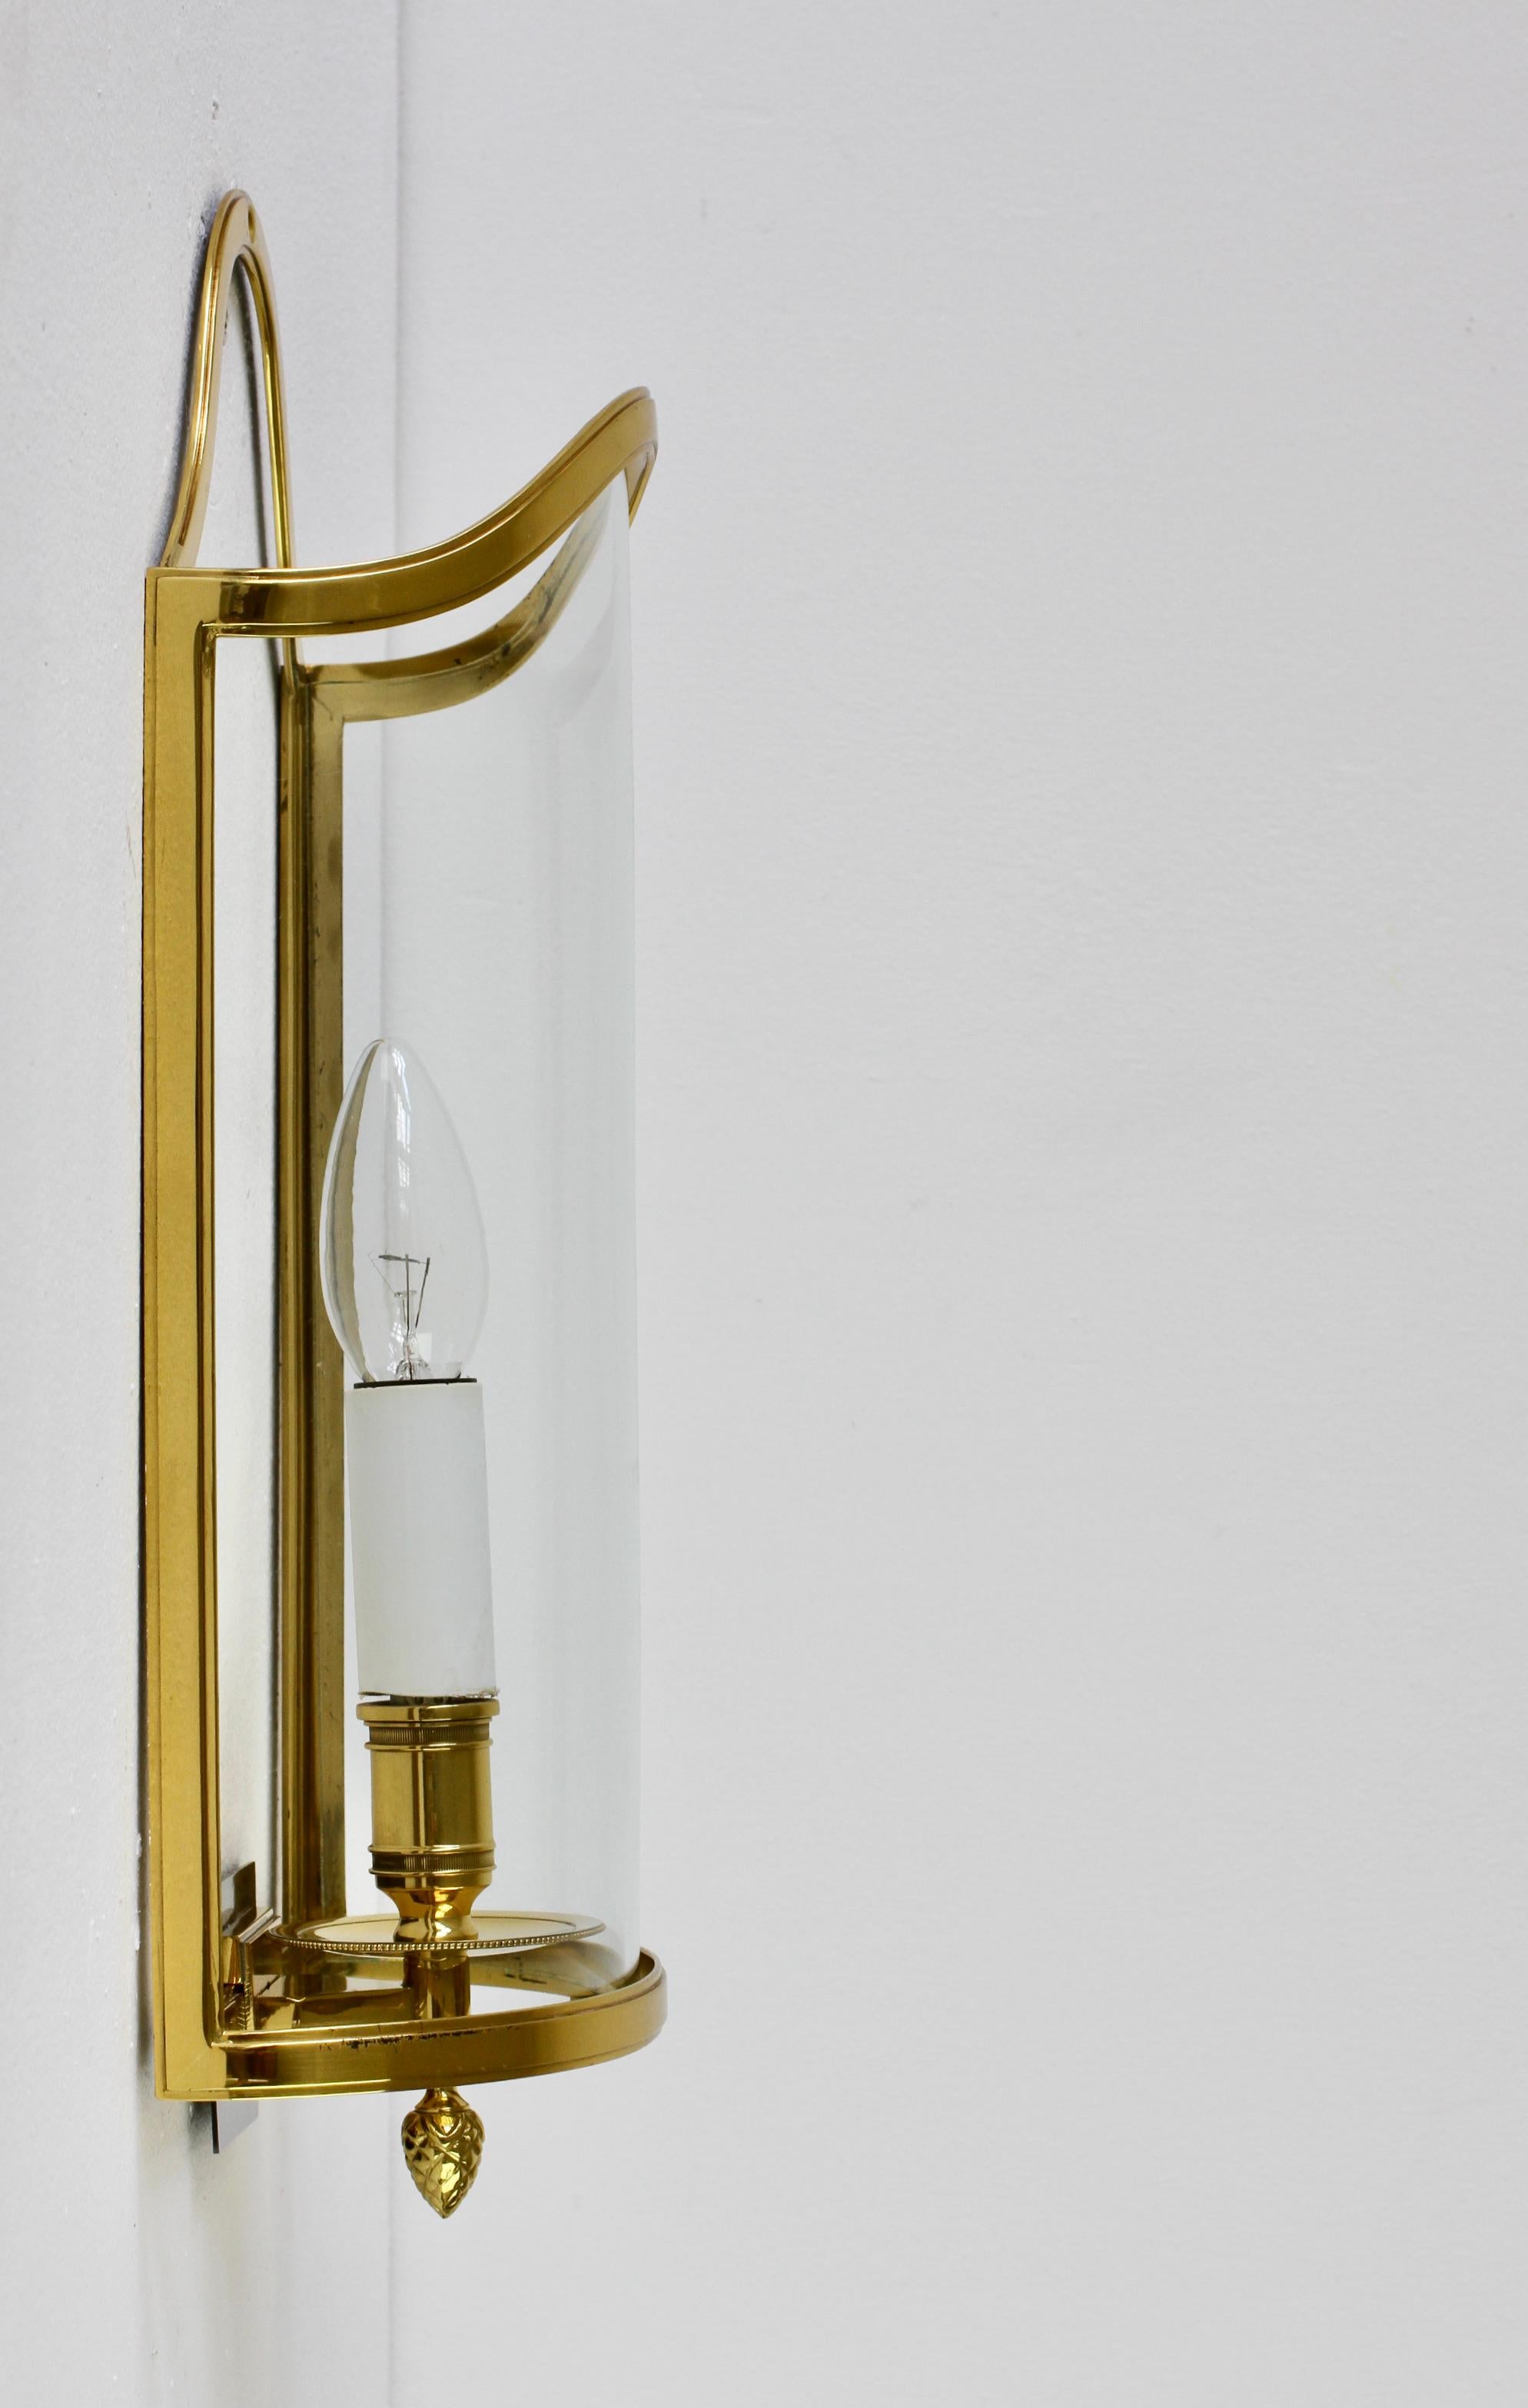 Pair of Maison Jansen Style Polished Brass Sconces by Vereinigte Werkstätten For Sale 4